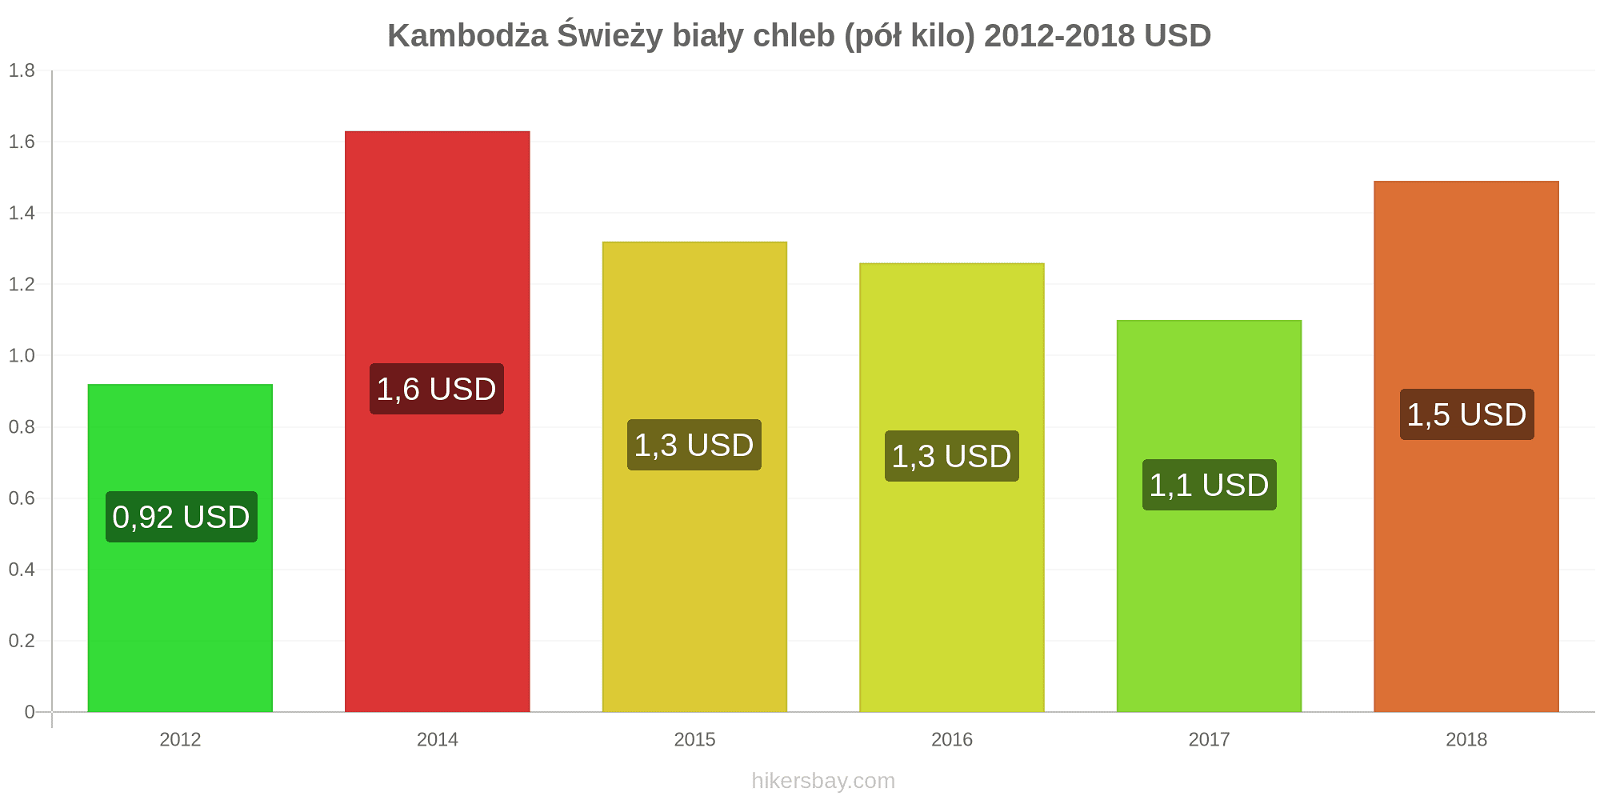 Kambodża zmiany cen Chleb pół kilo hikersbay.com